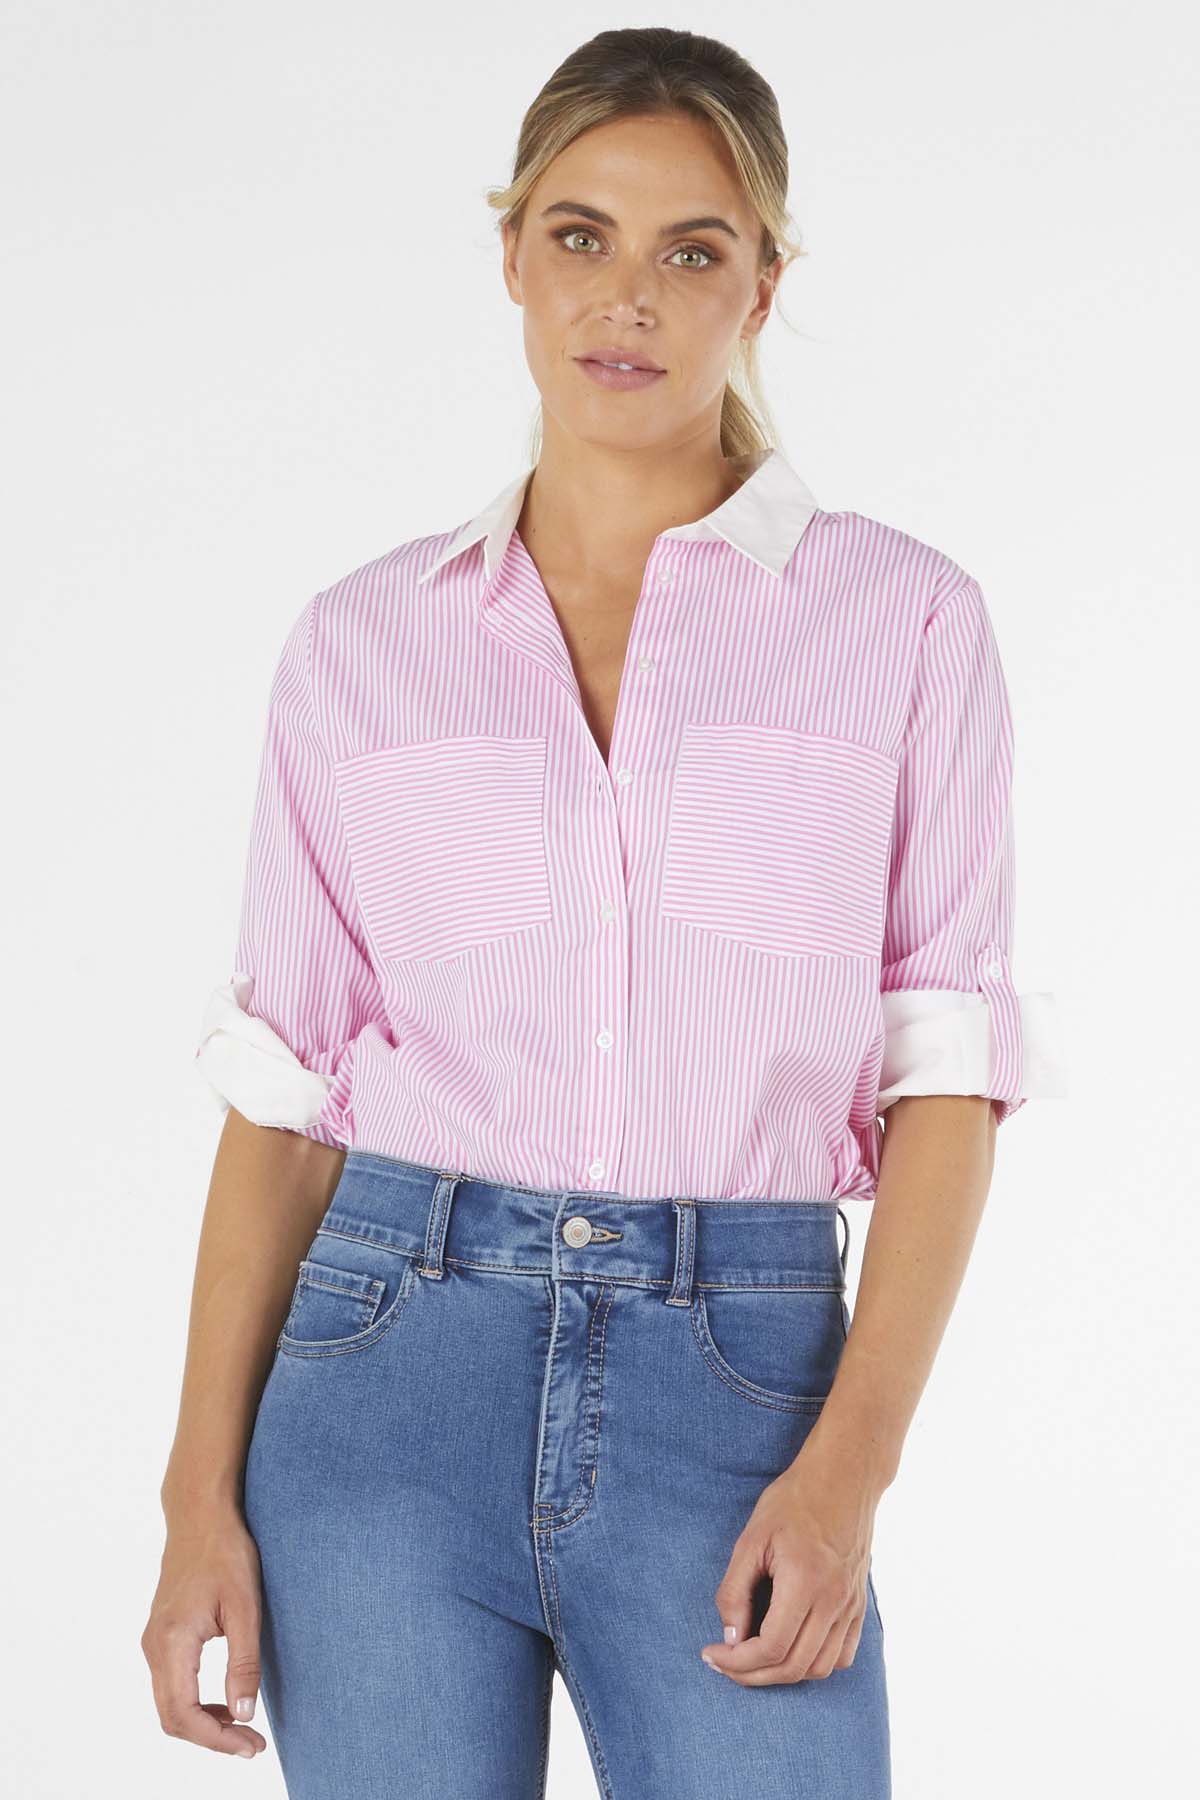 Betty Basics Heston Shirt in Pink Pinstripe - Hey Sara